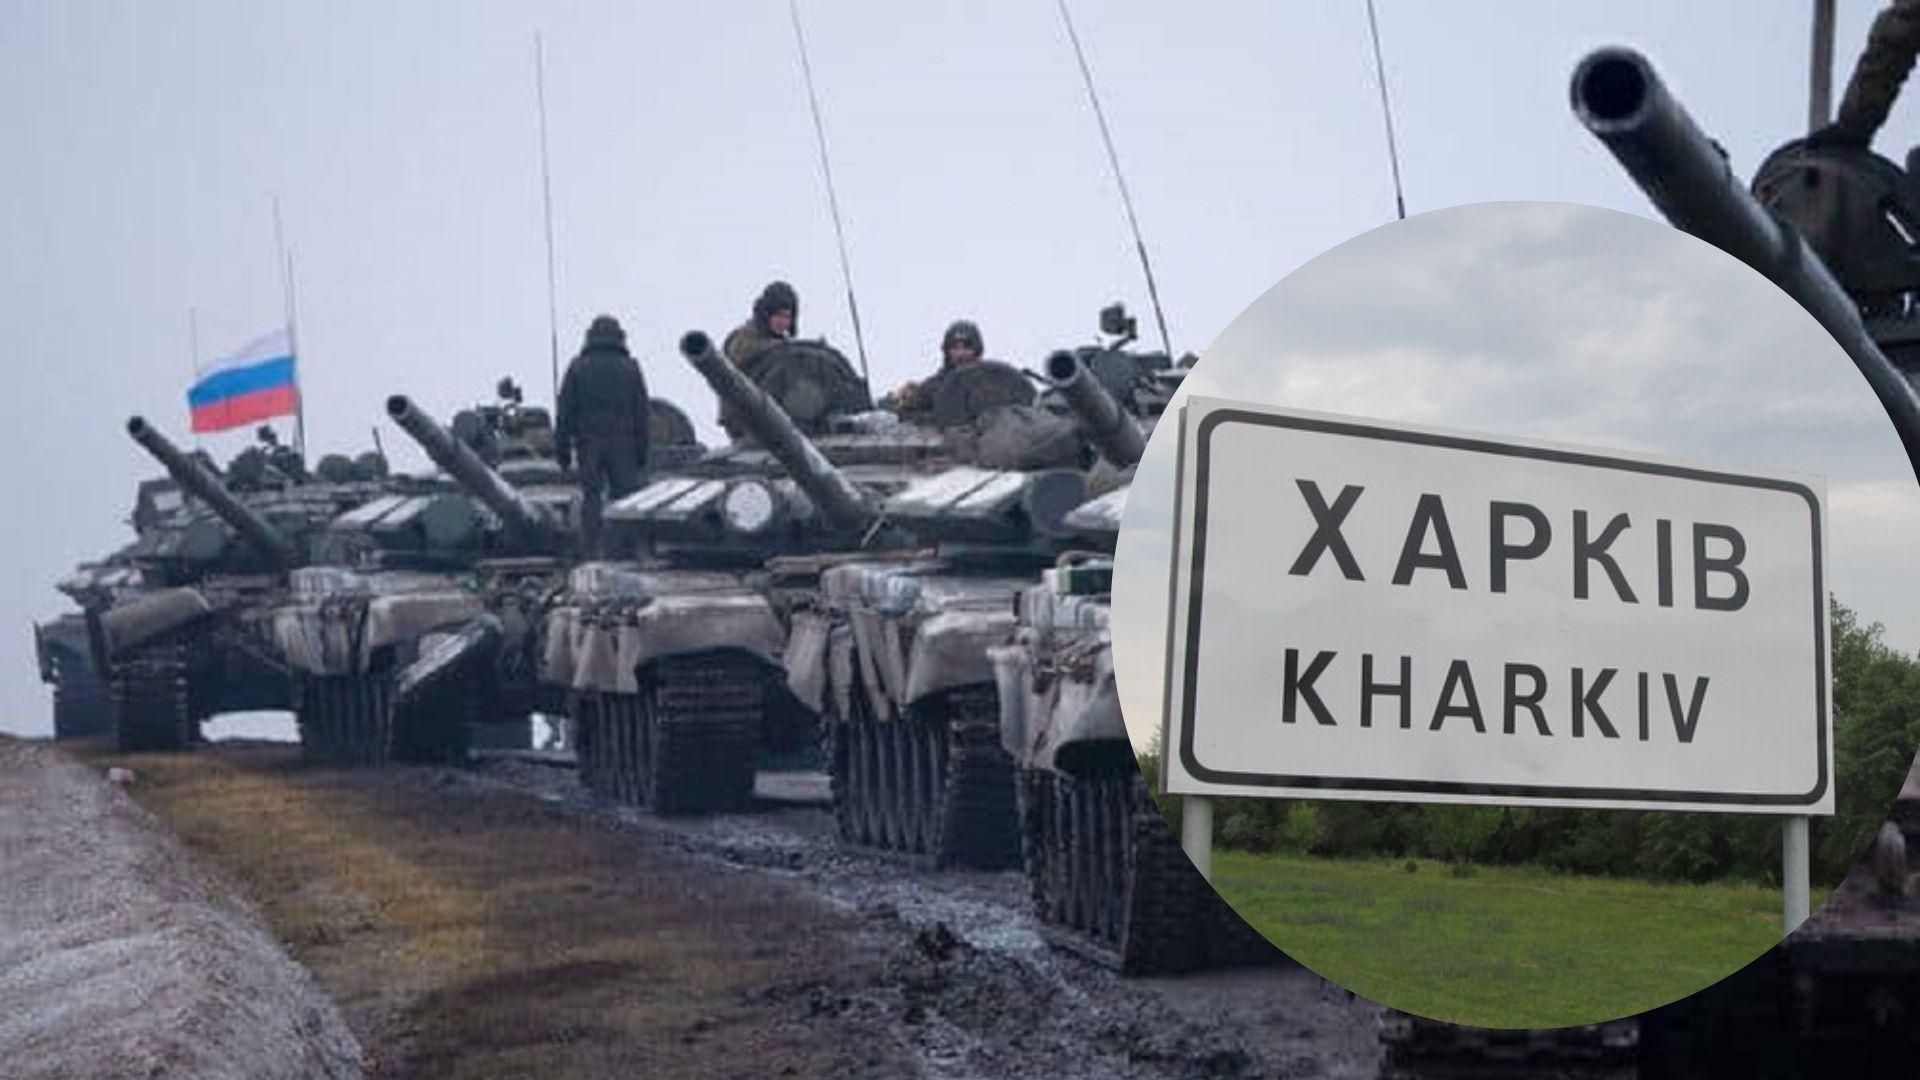 ЗСУ відбили втрачені позиції в Харківській області: подробиці від ISW